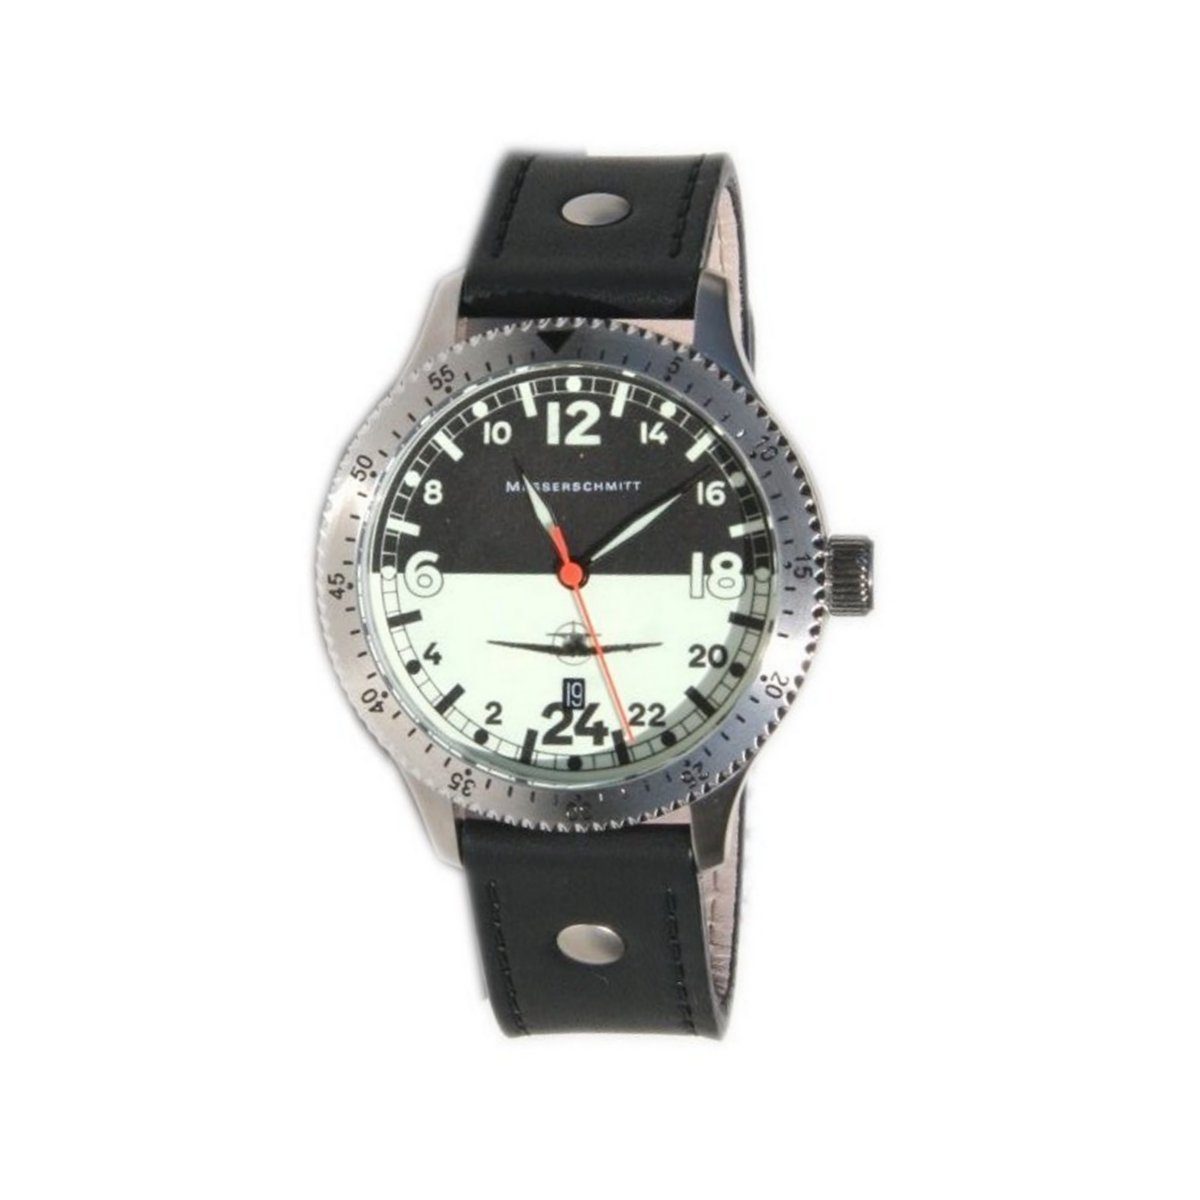 Messerschmitt Quarzuhr 108-24DR, Herren Uhr der Marke Aristo Messerschmitt  mit Quarzwerk, Modellnummer 108-24DR